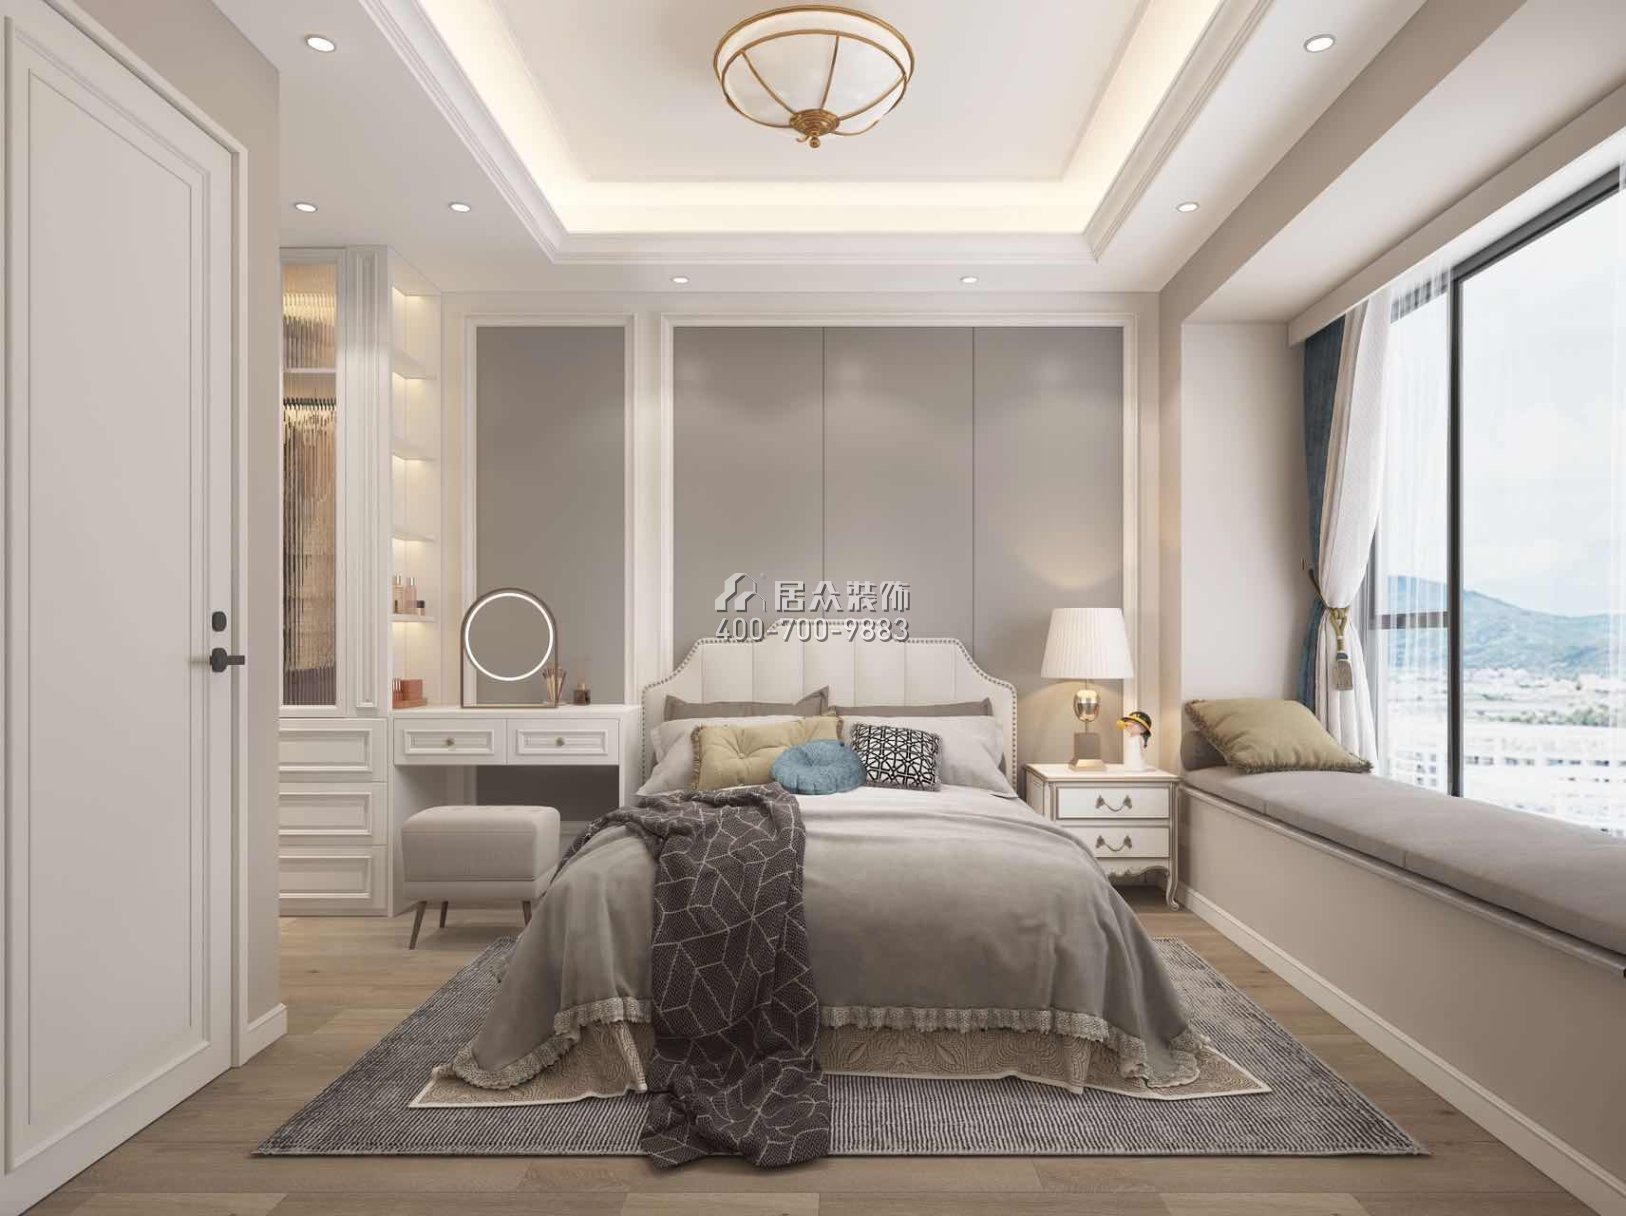 深铁阅山镜90平方米美式风格平层户型卧室装修效果图